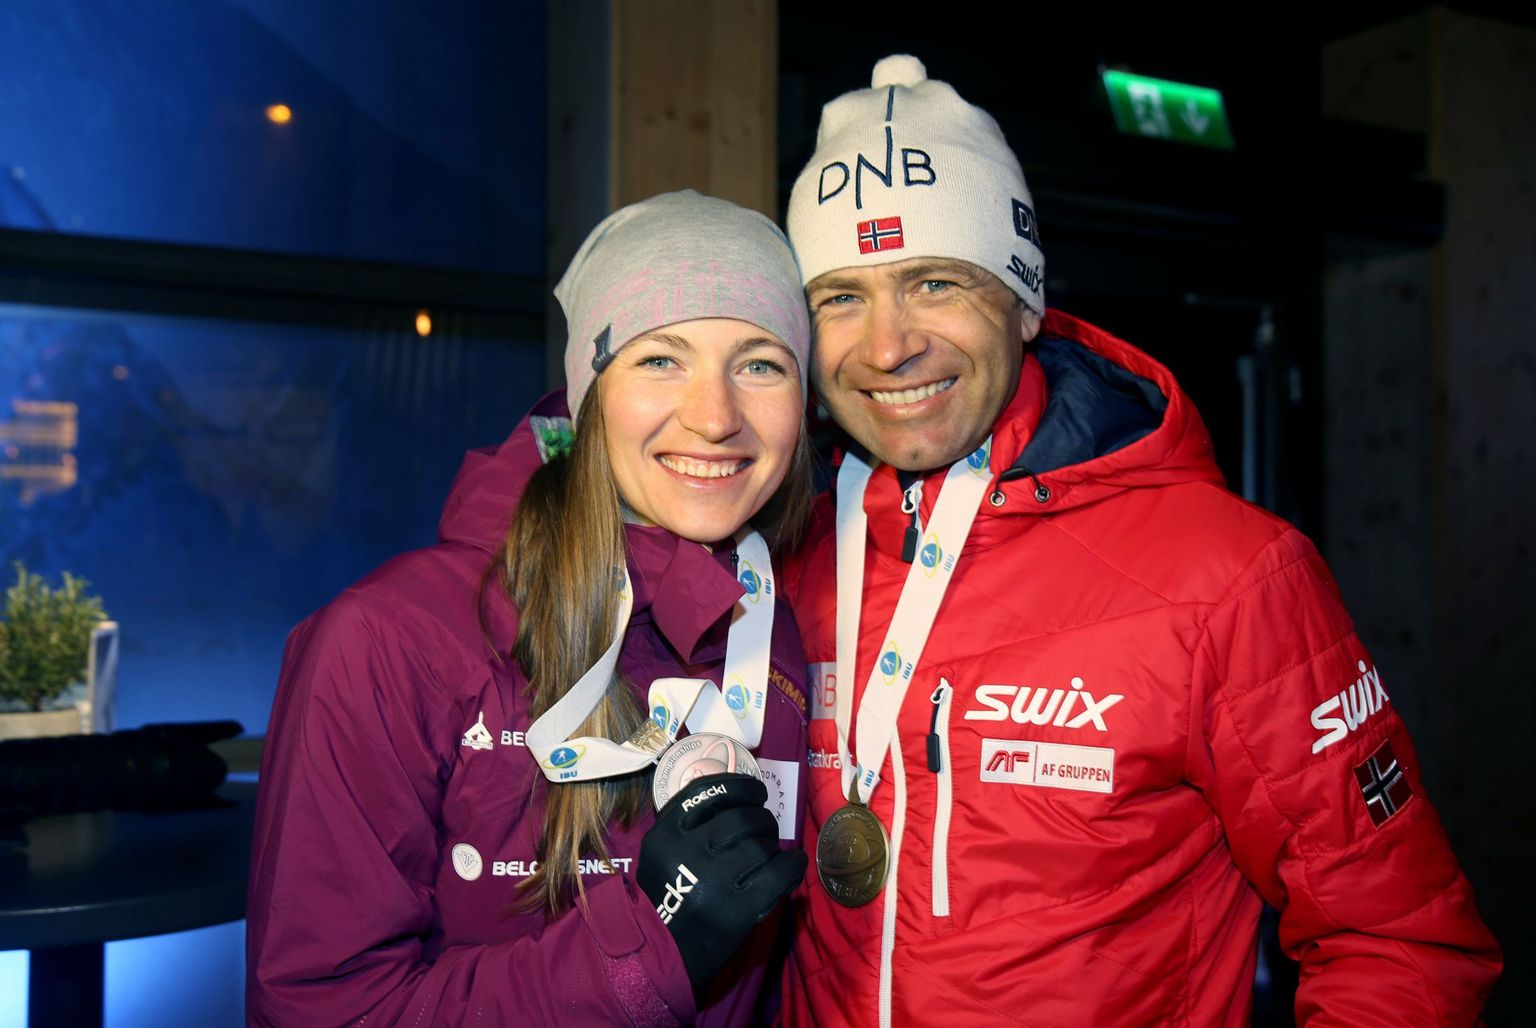 13. veebruar 2017: Darja Domratšova võitis MM-il jälitussõidus hõbe- ja Ole Einar Bjørndalen pronksmedali.